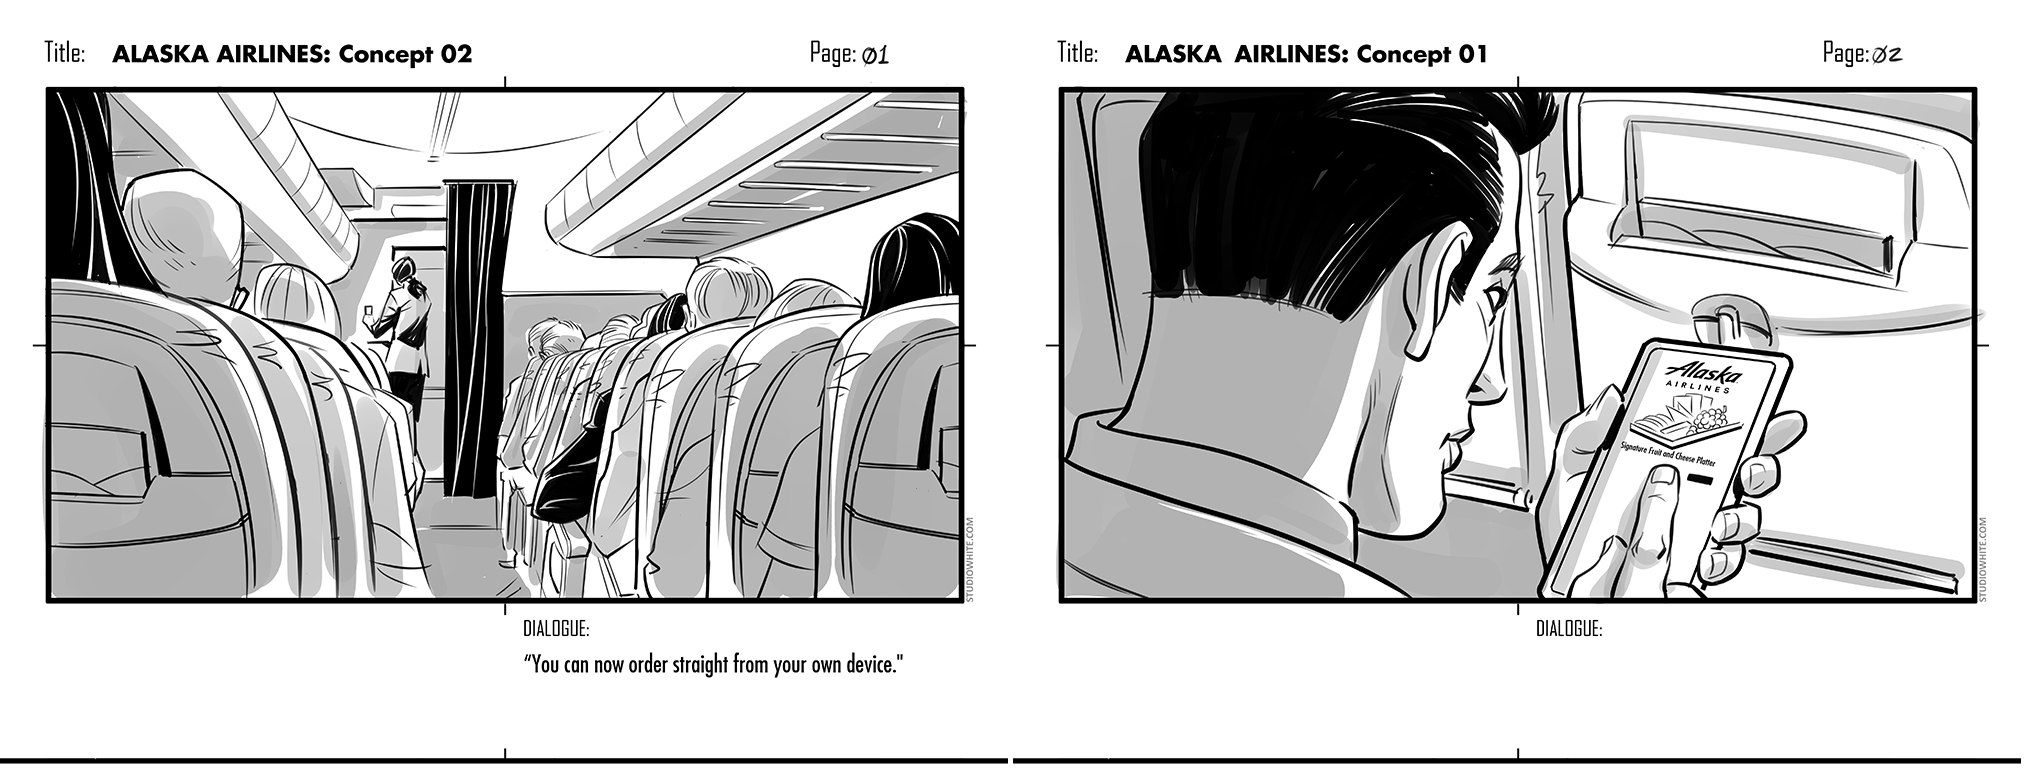 "studiowhite" "shane white" "shane patrick white" "storyboards" "seattle storyboards" "seattle" "Alaska Airlines"